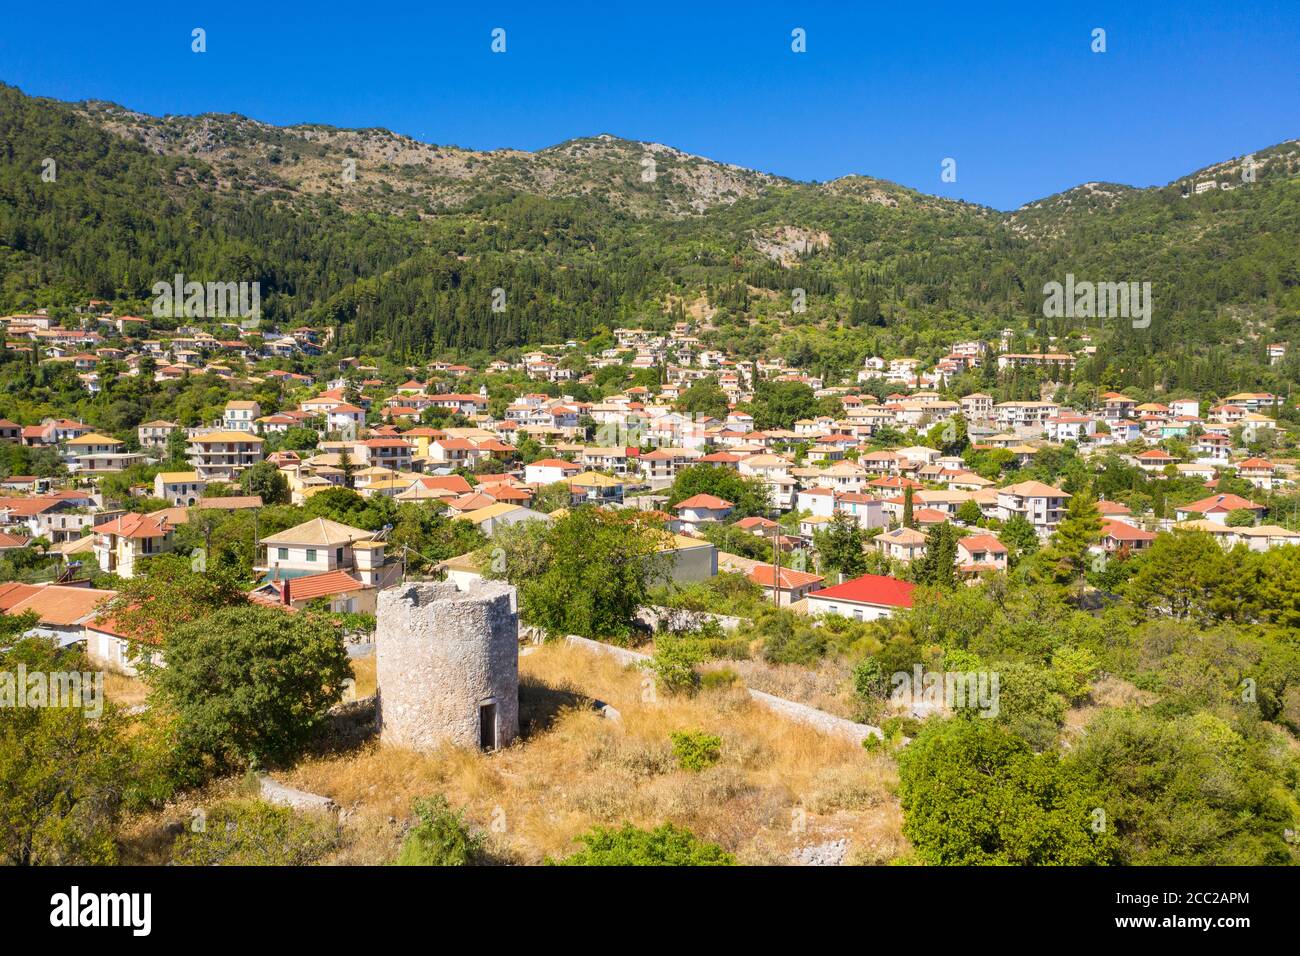 Un molino de viento en ruinas con edificios detrás en Karya, un pueblo de montaña tradicional en Lefkada, Islas Jónicas, Grecia Foto de stock